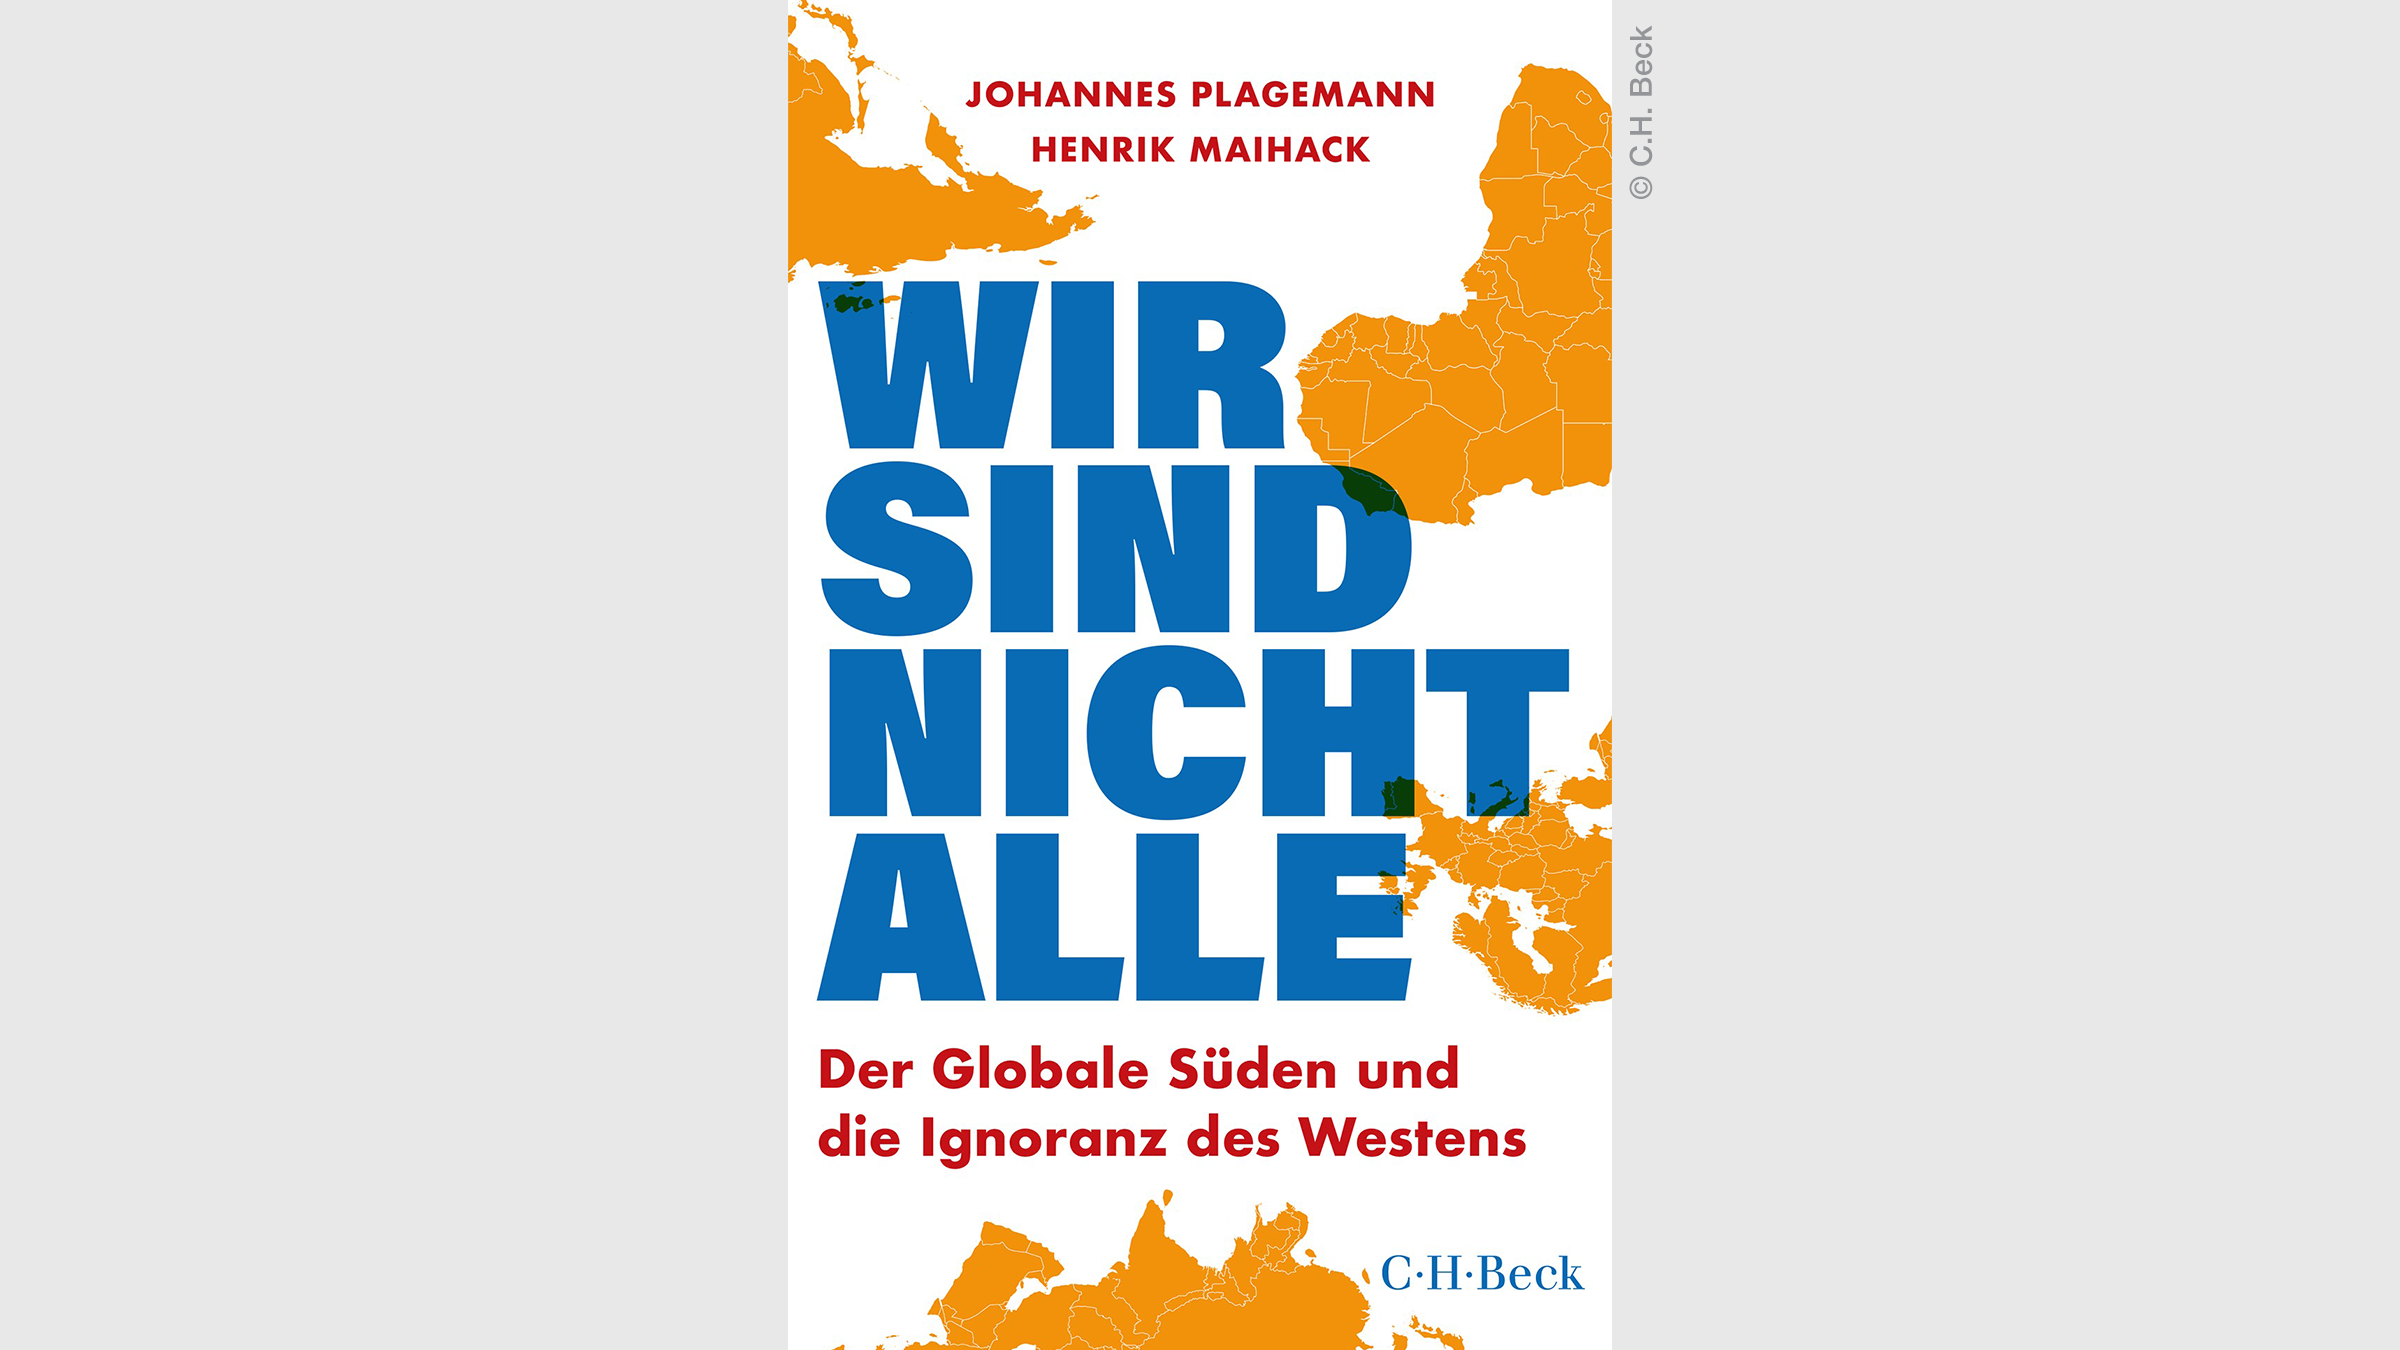 Buchkritik: "Wir sind nicht alle" von Johannes Plagemann und Henrik Maihack